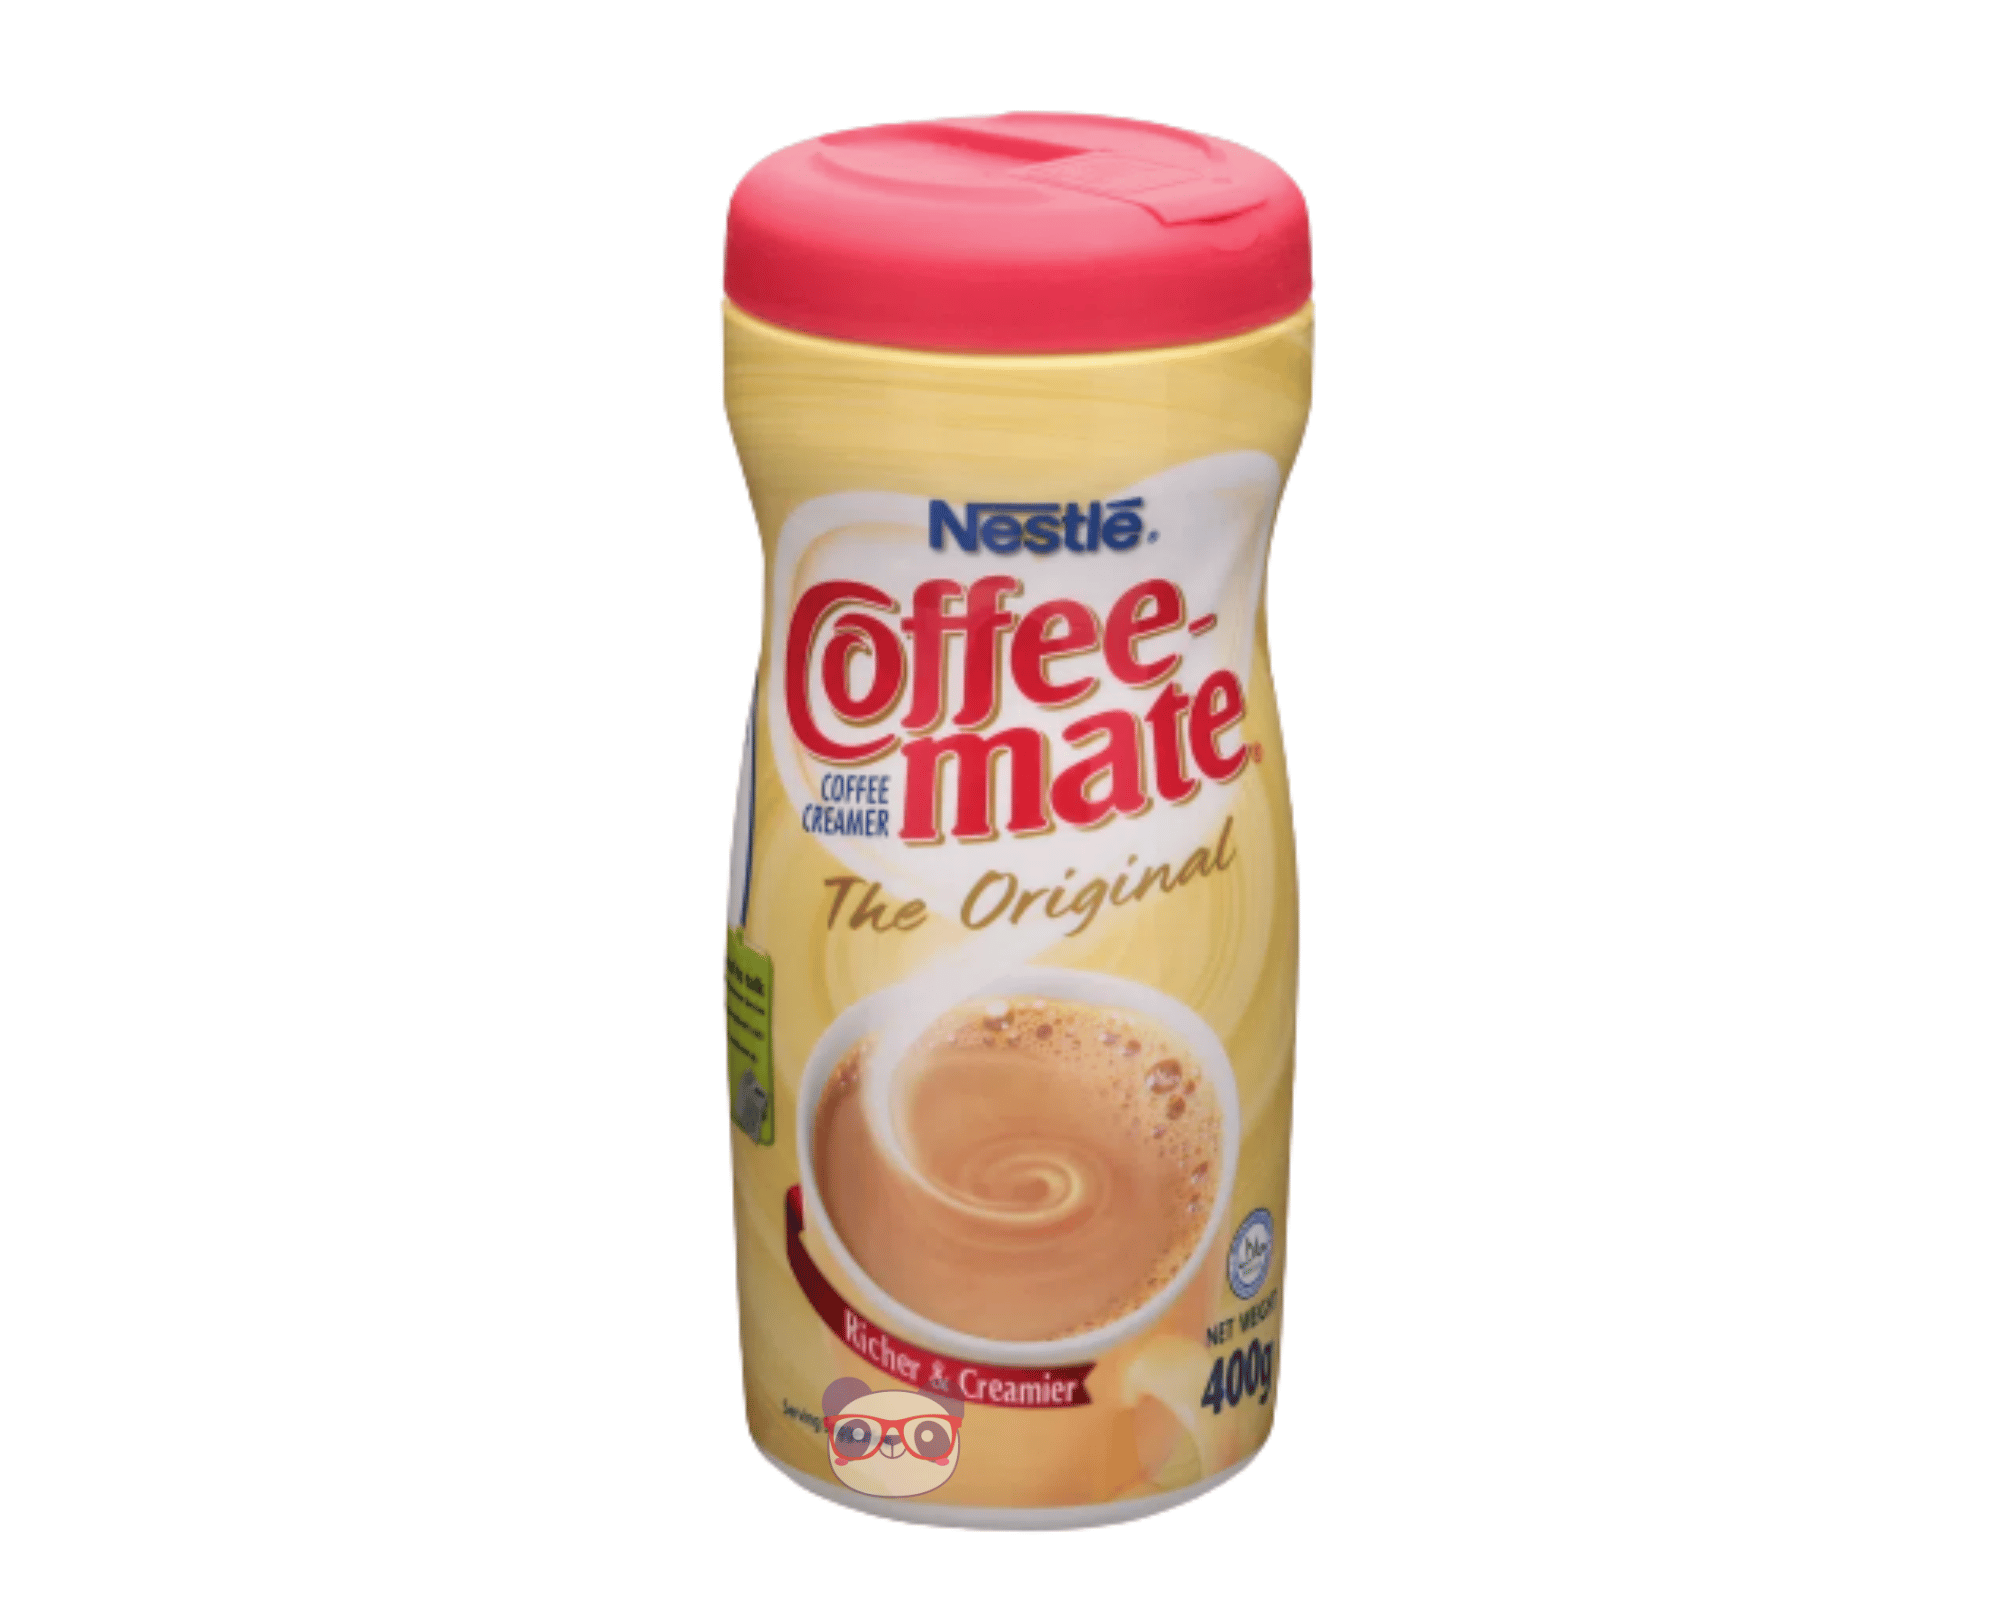 Coffee Mate Creme instantâneo p/ Café - Nestlé 400g